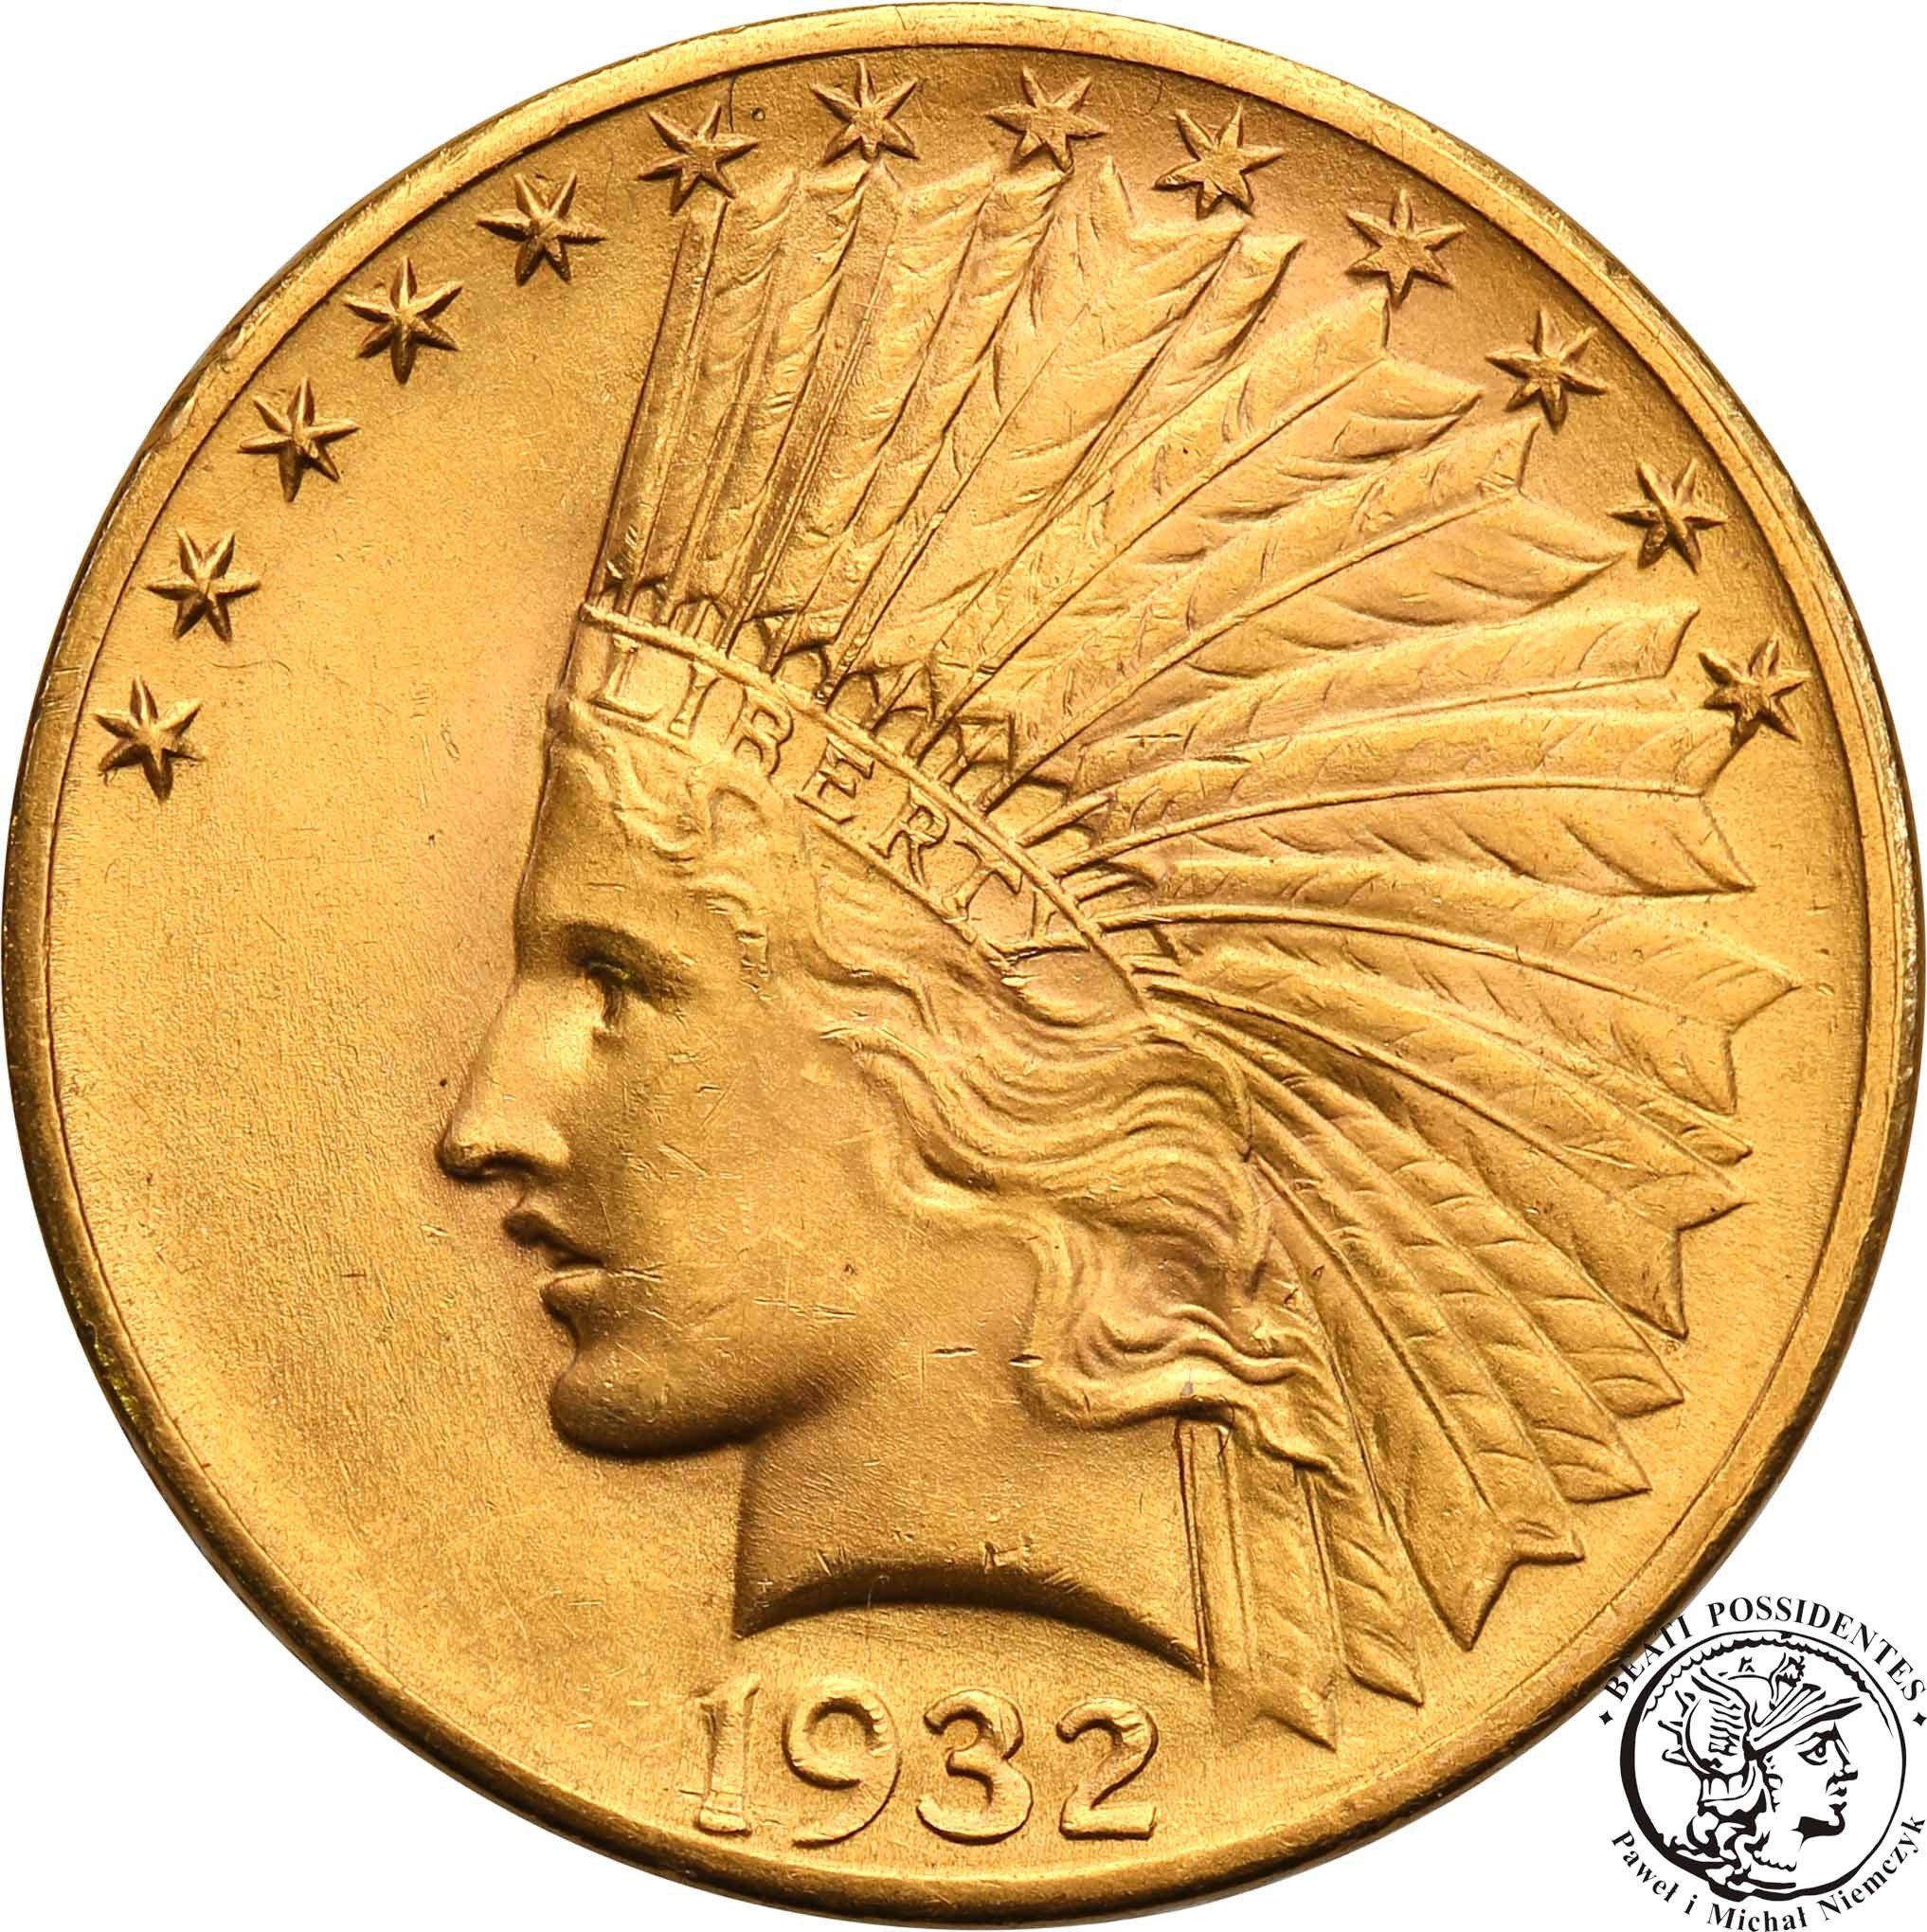 USA 10 dolarów 1932 Philadelphia Indianin st.1